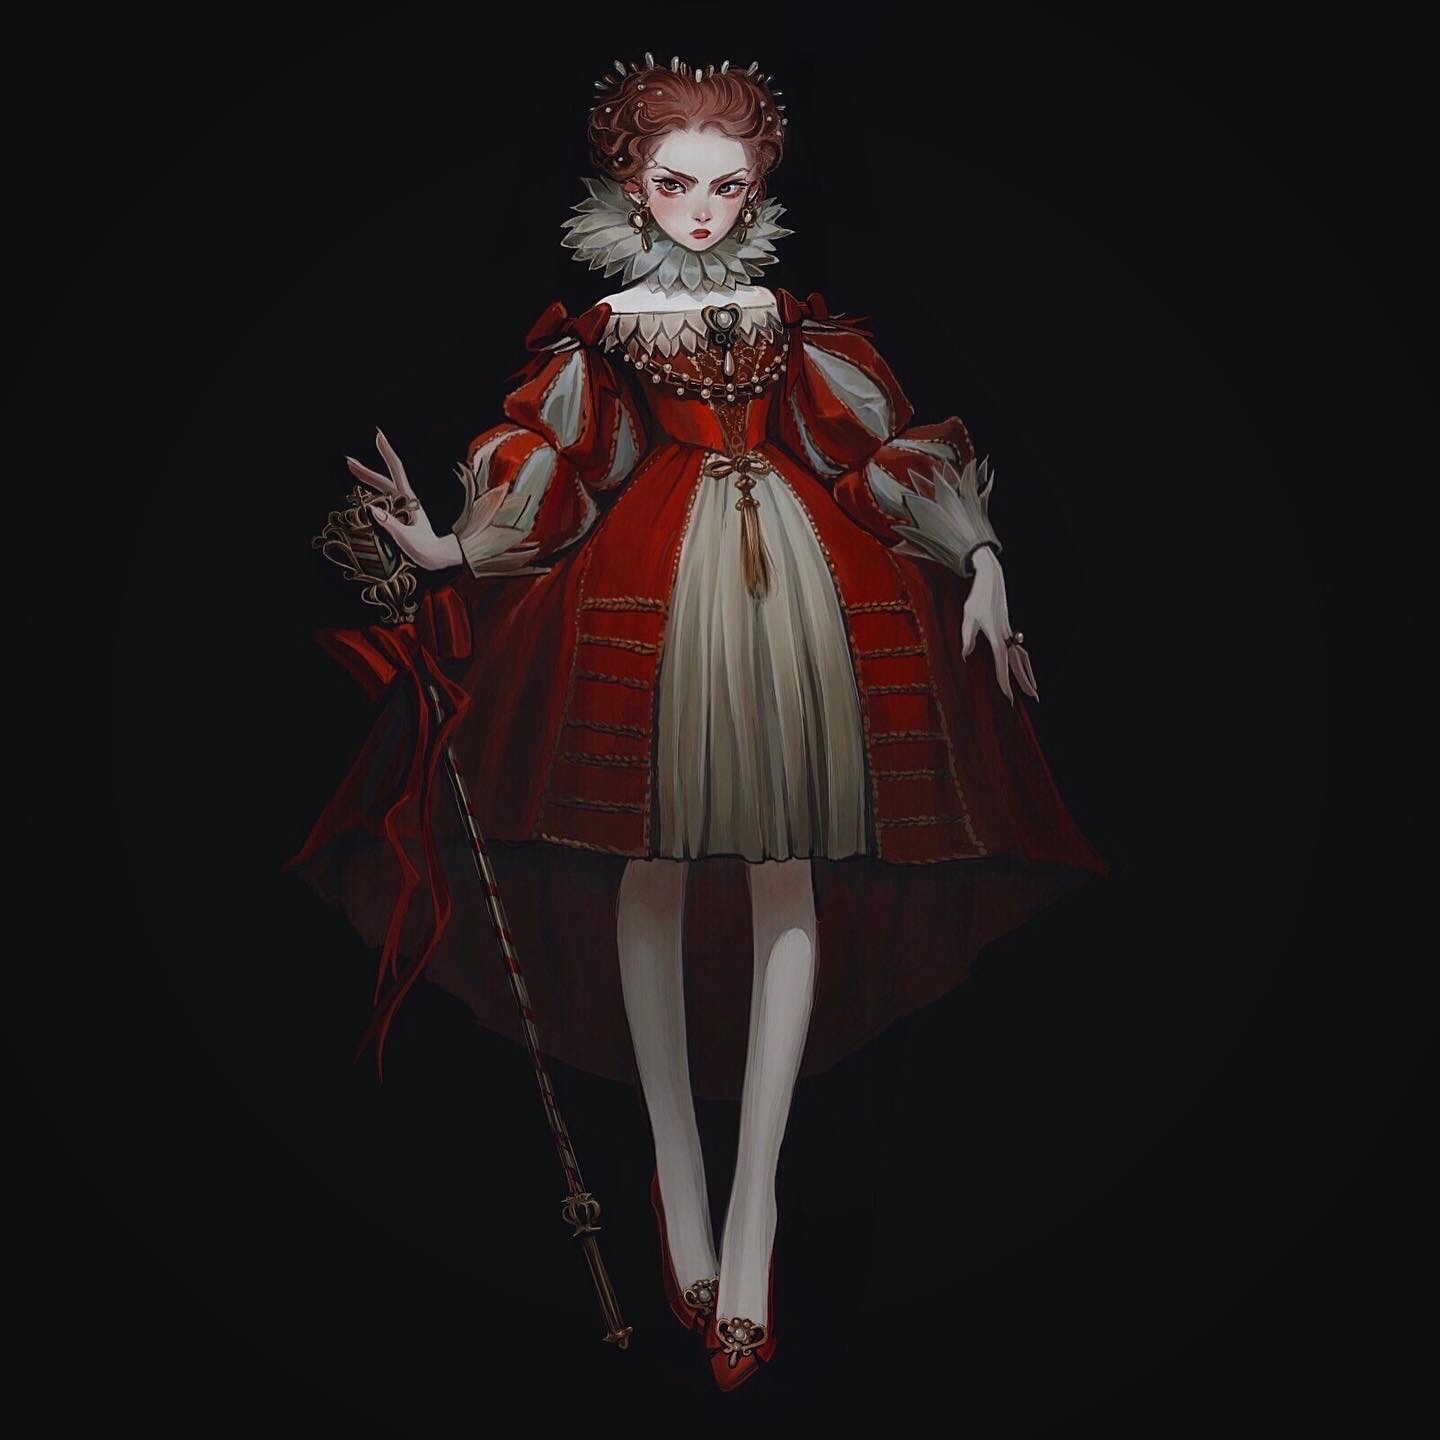 ArtStation - The countess